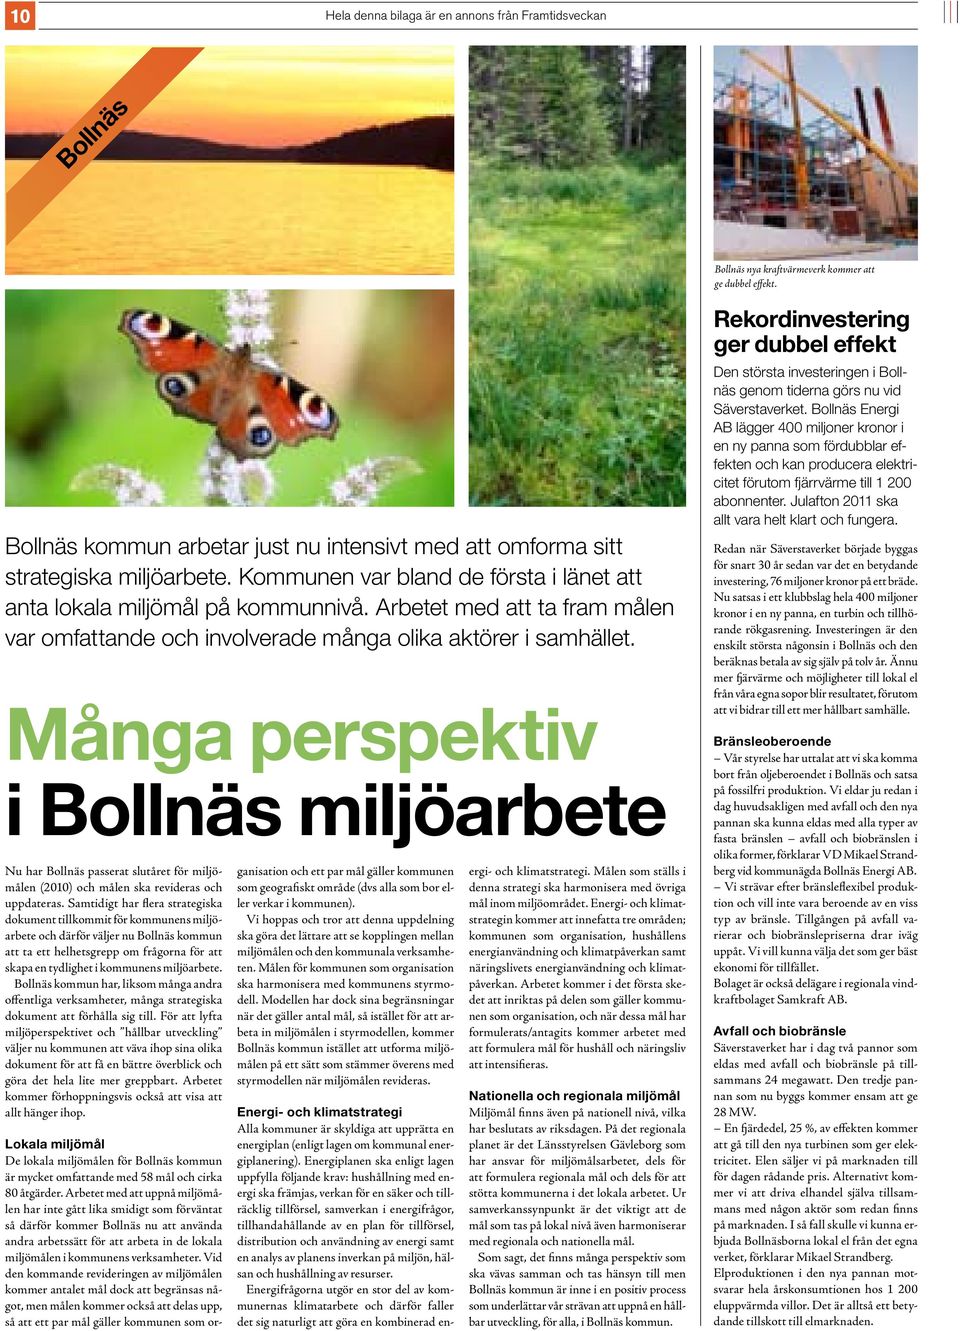 Många perspektiv i Bollnäs miljöarbete Nu har Bollnäs passerat slutåret för miljömålen (2010) och målen ska revideras och uppdateras.